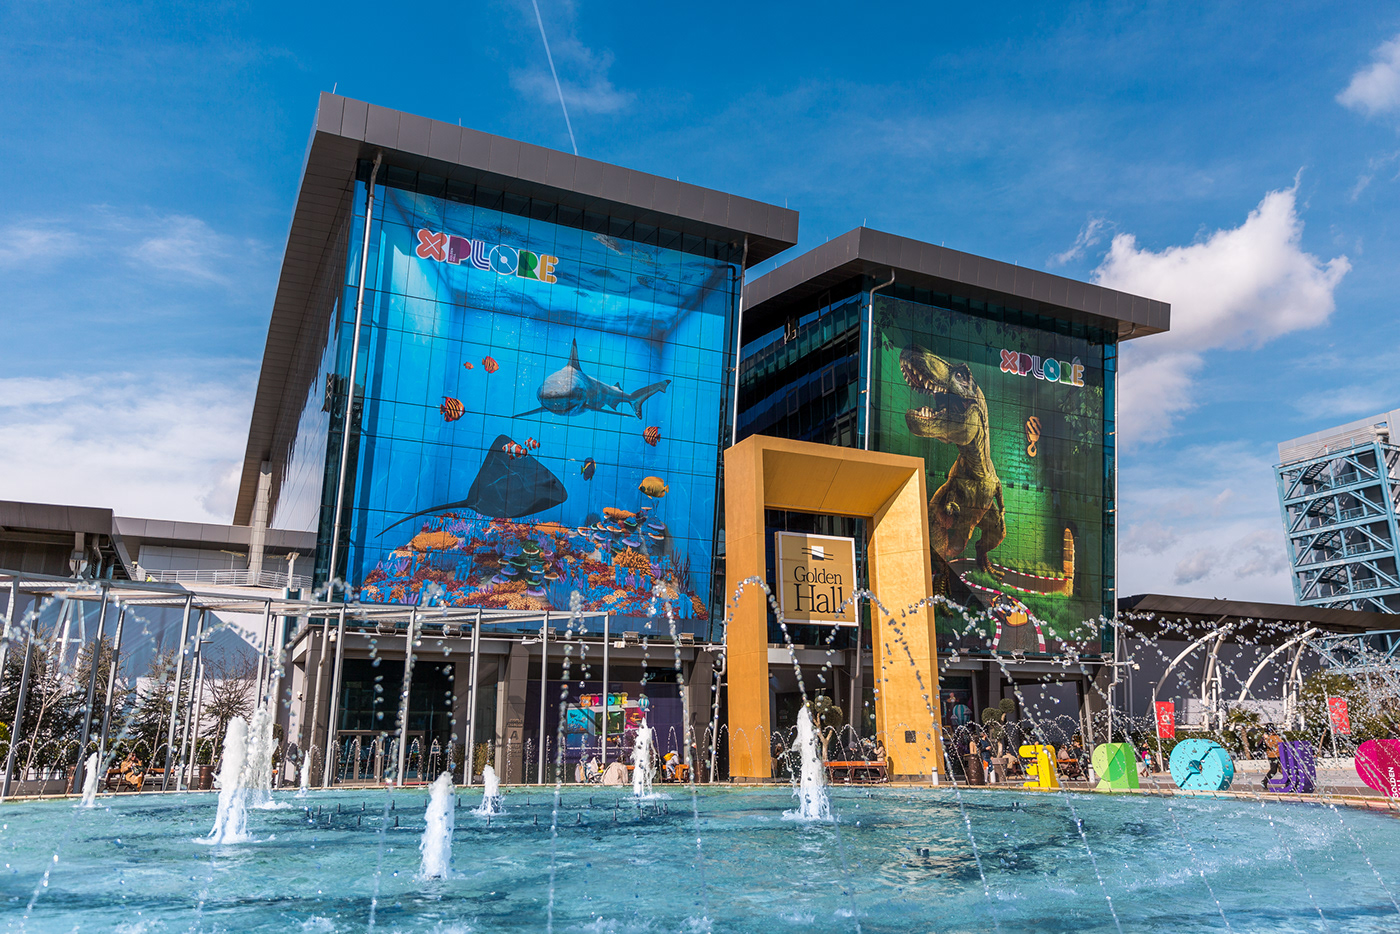 3D adventure aquarium Dinosaur Entertainment kids mall Ocean science